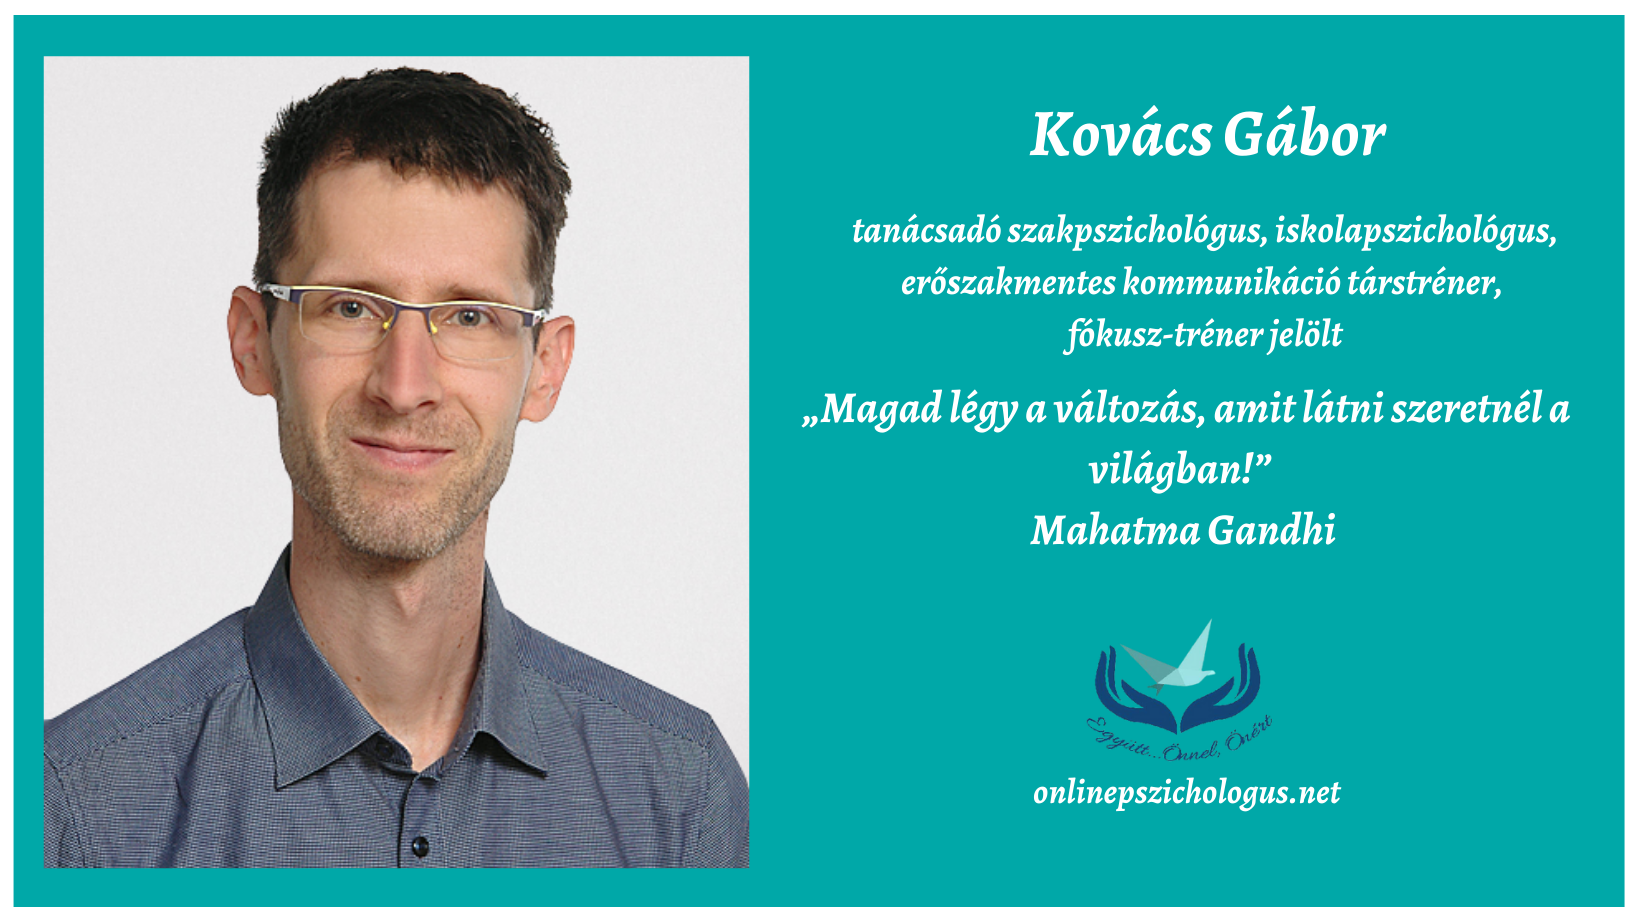 Interjú Kovács Gábor tanácsadó szakpszichológussal